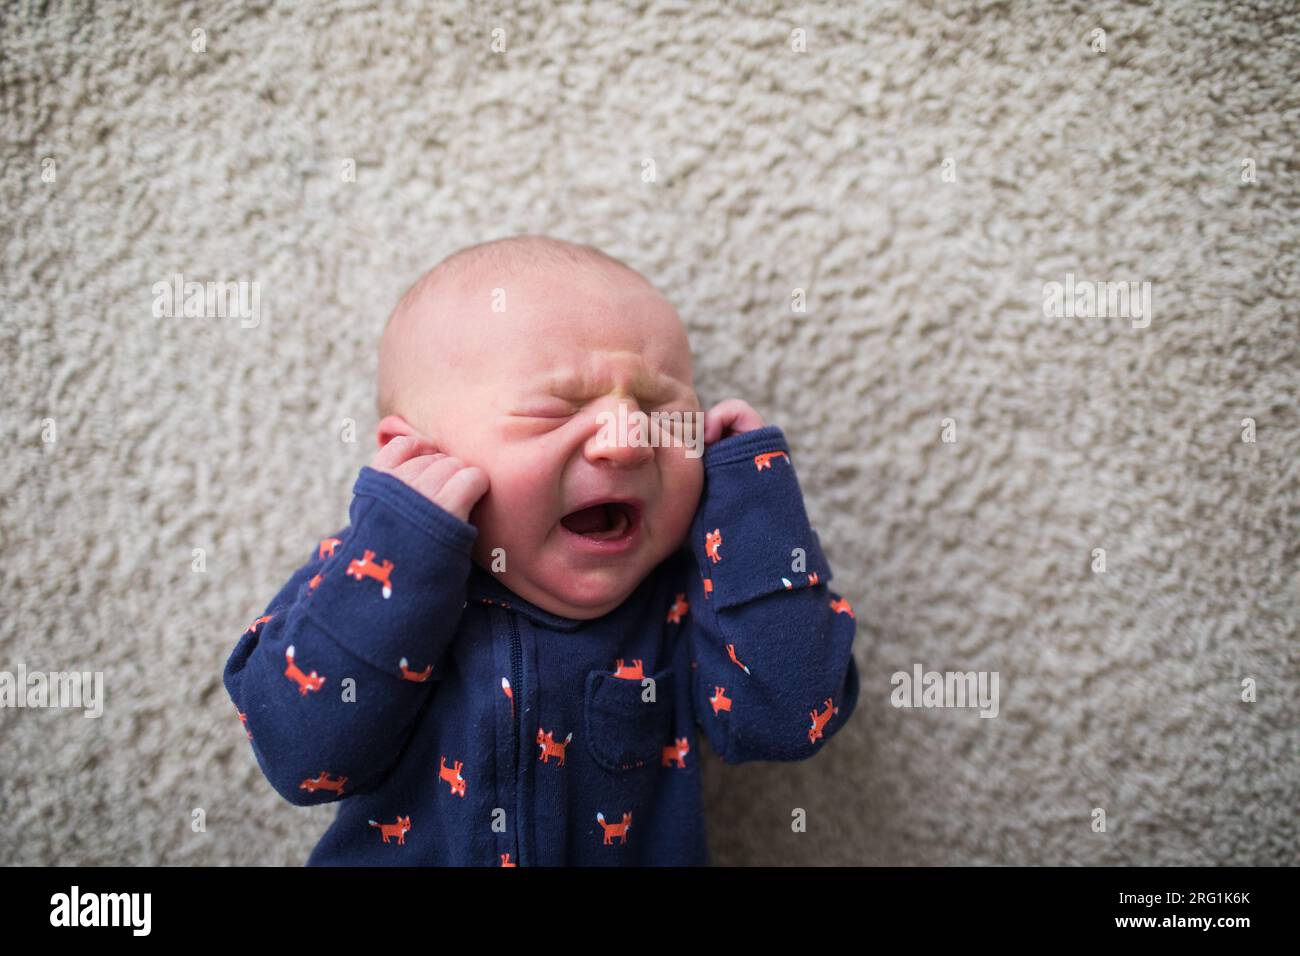 Vue de dessus du bébé nouveau-né pleurant sur le sol Banque D'Images